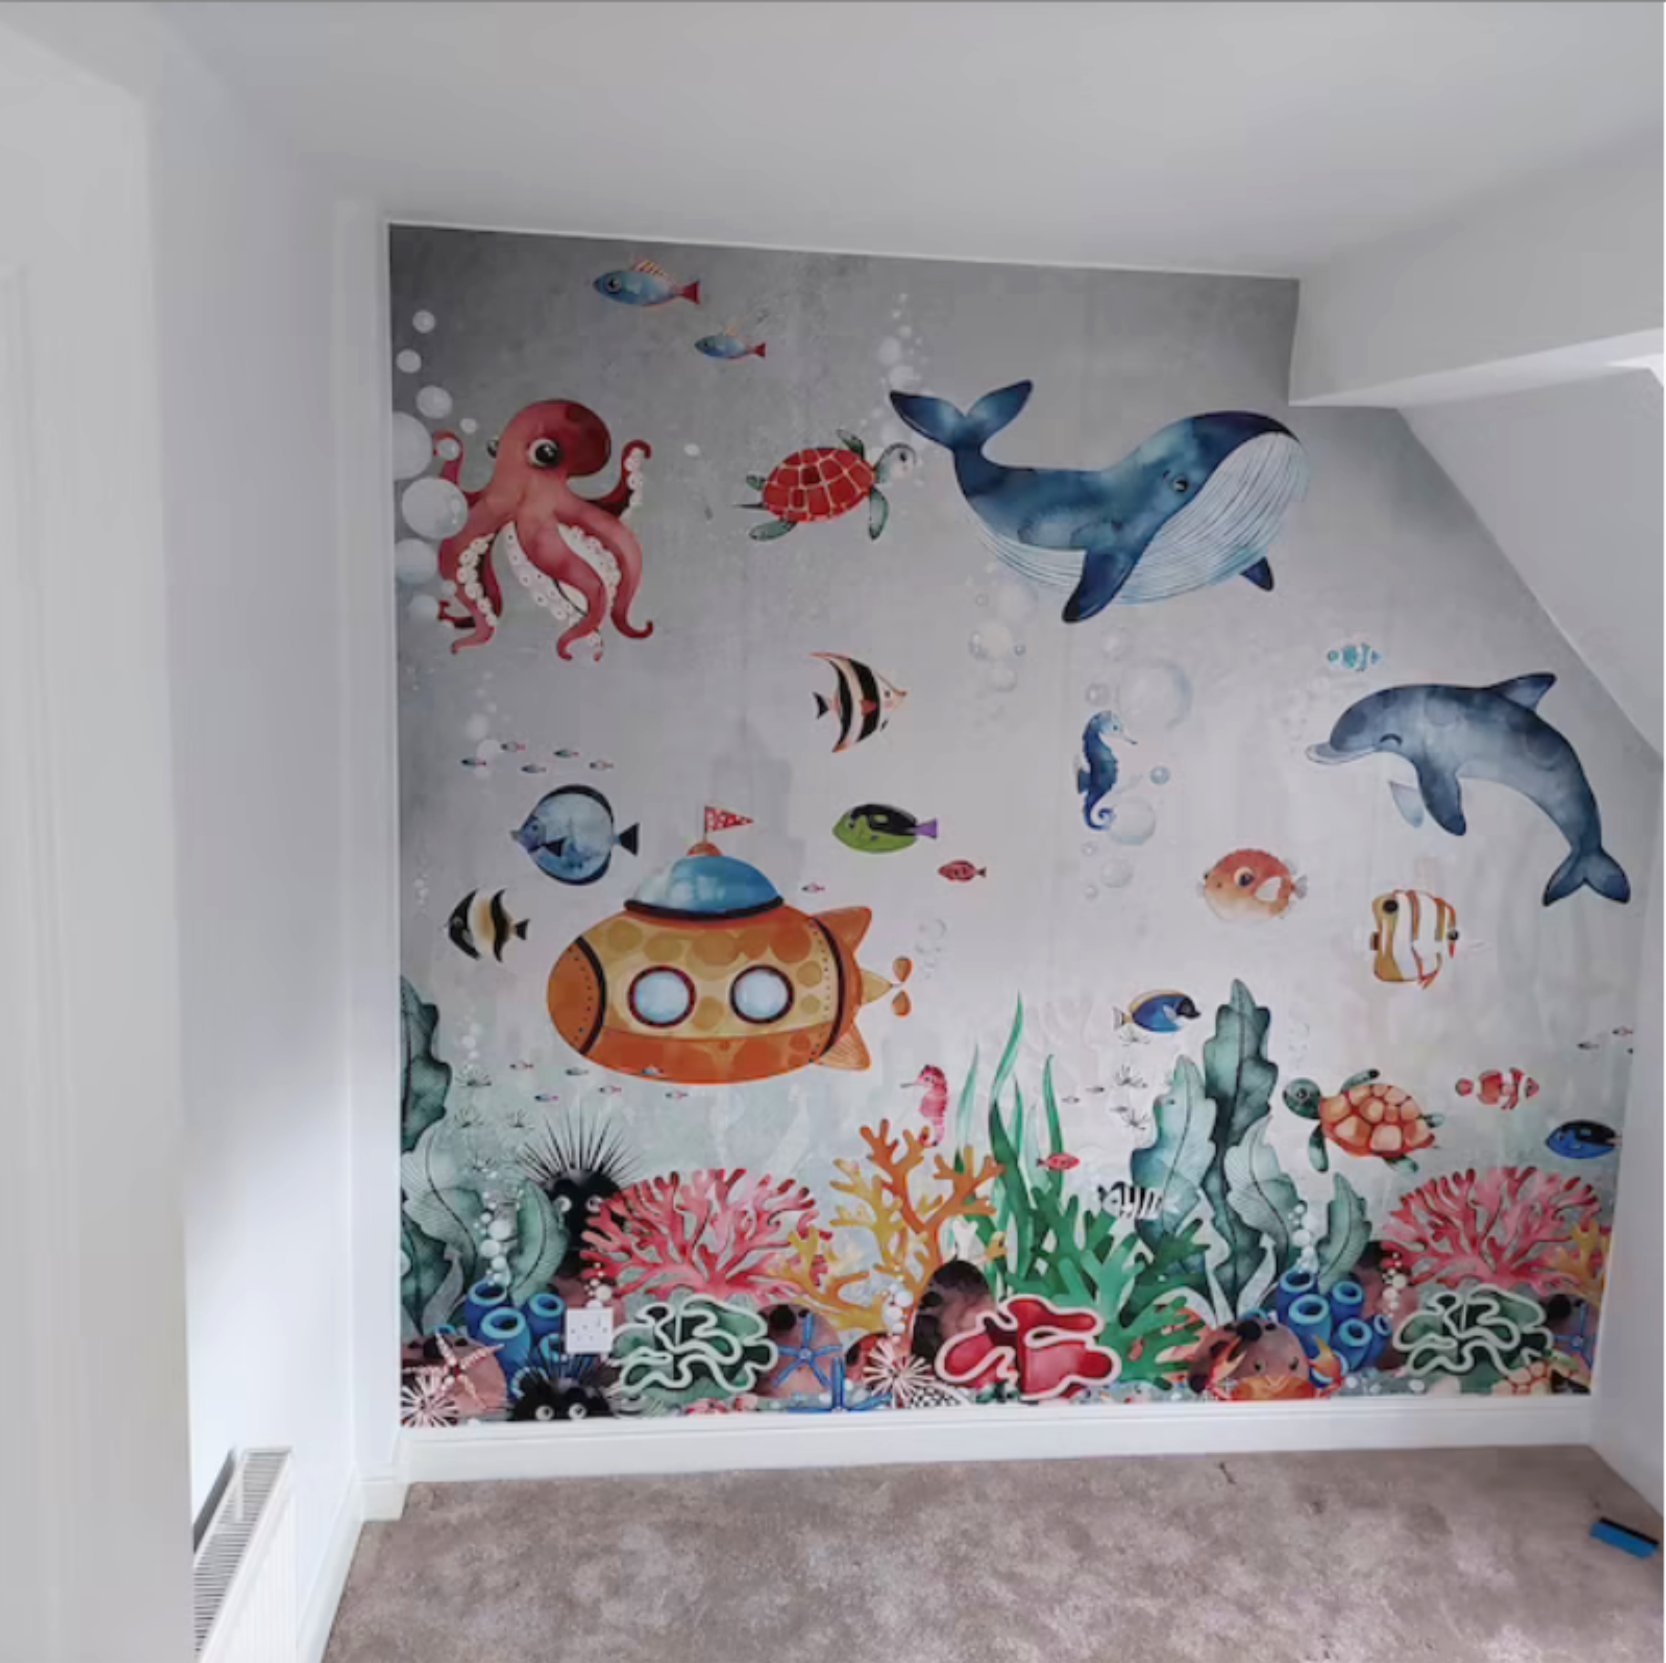 Underwater Wallpaper